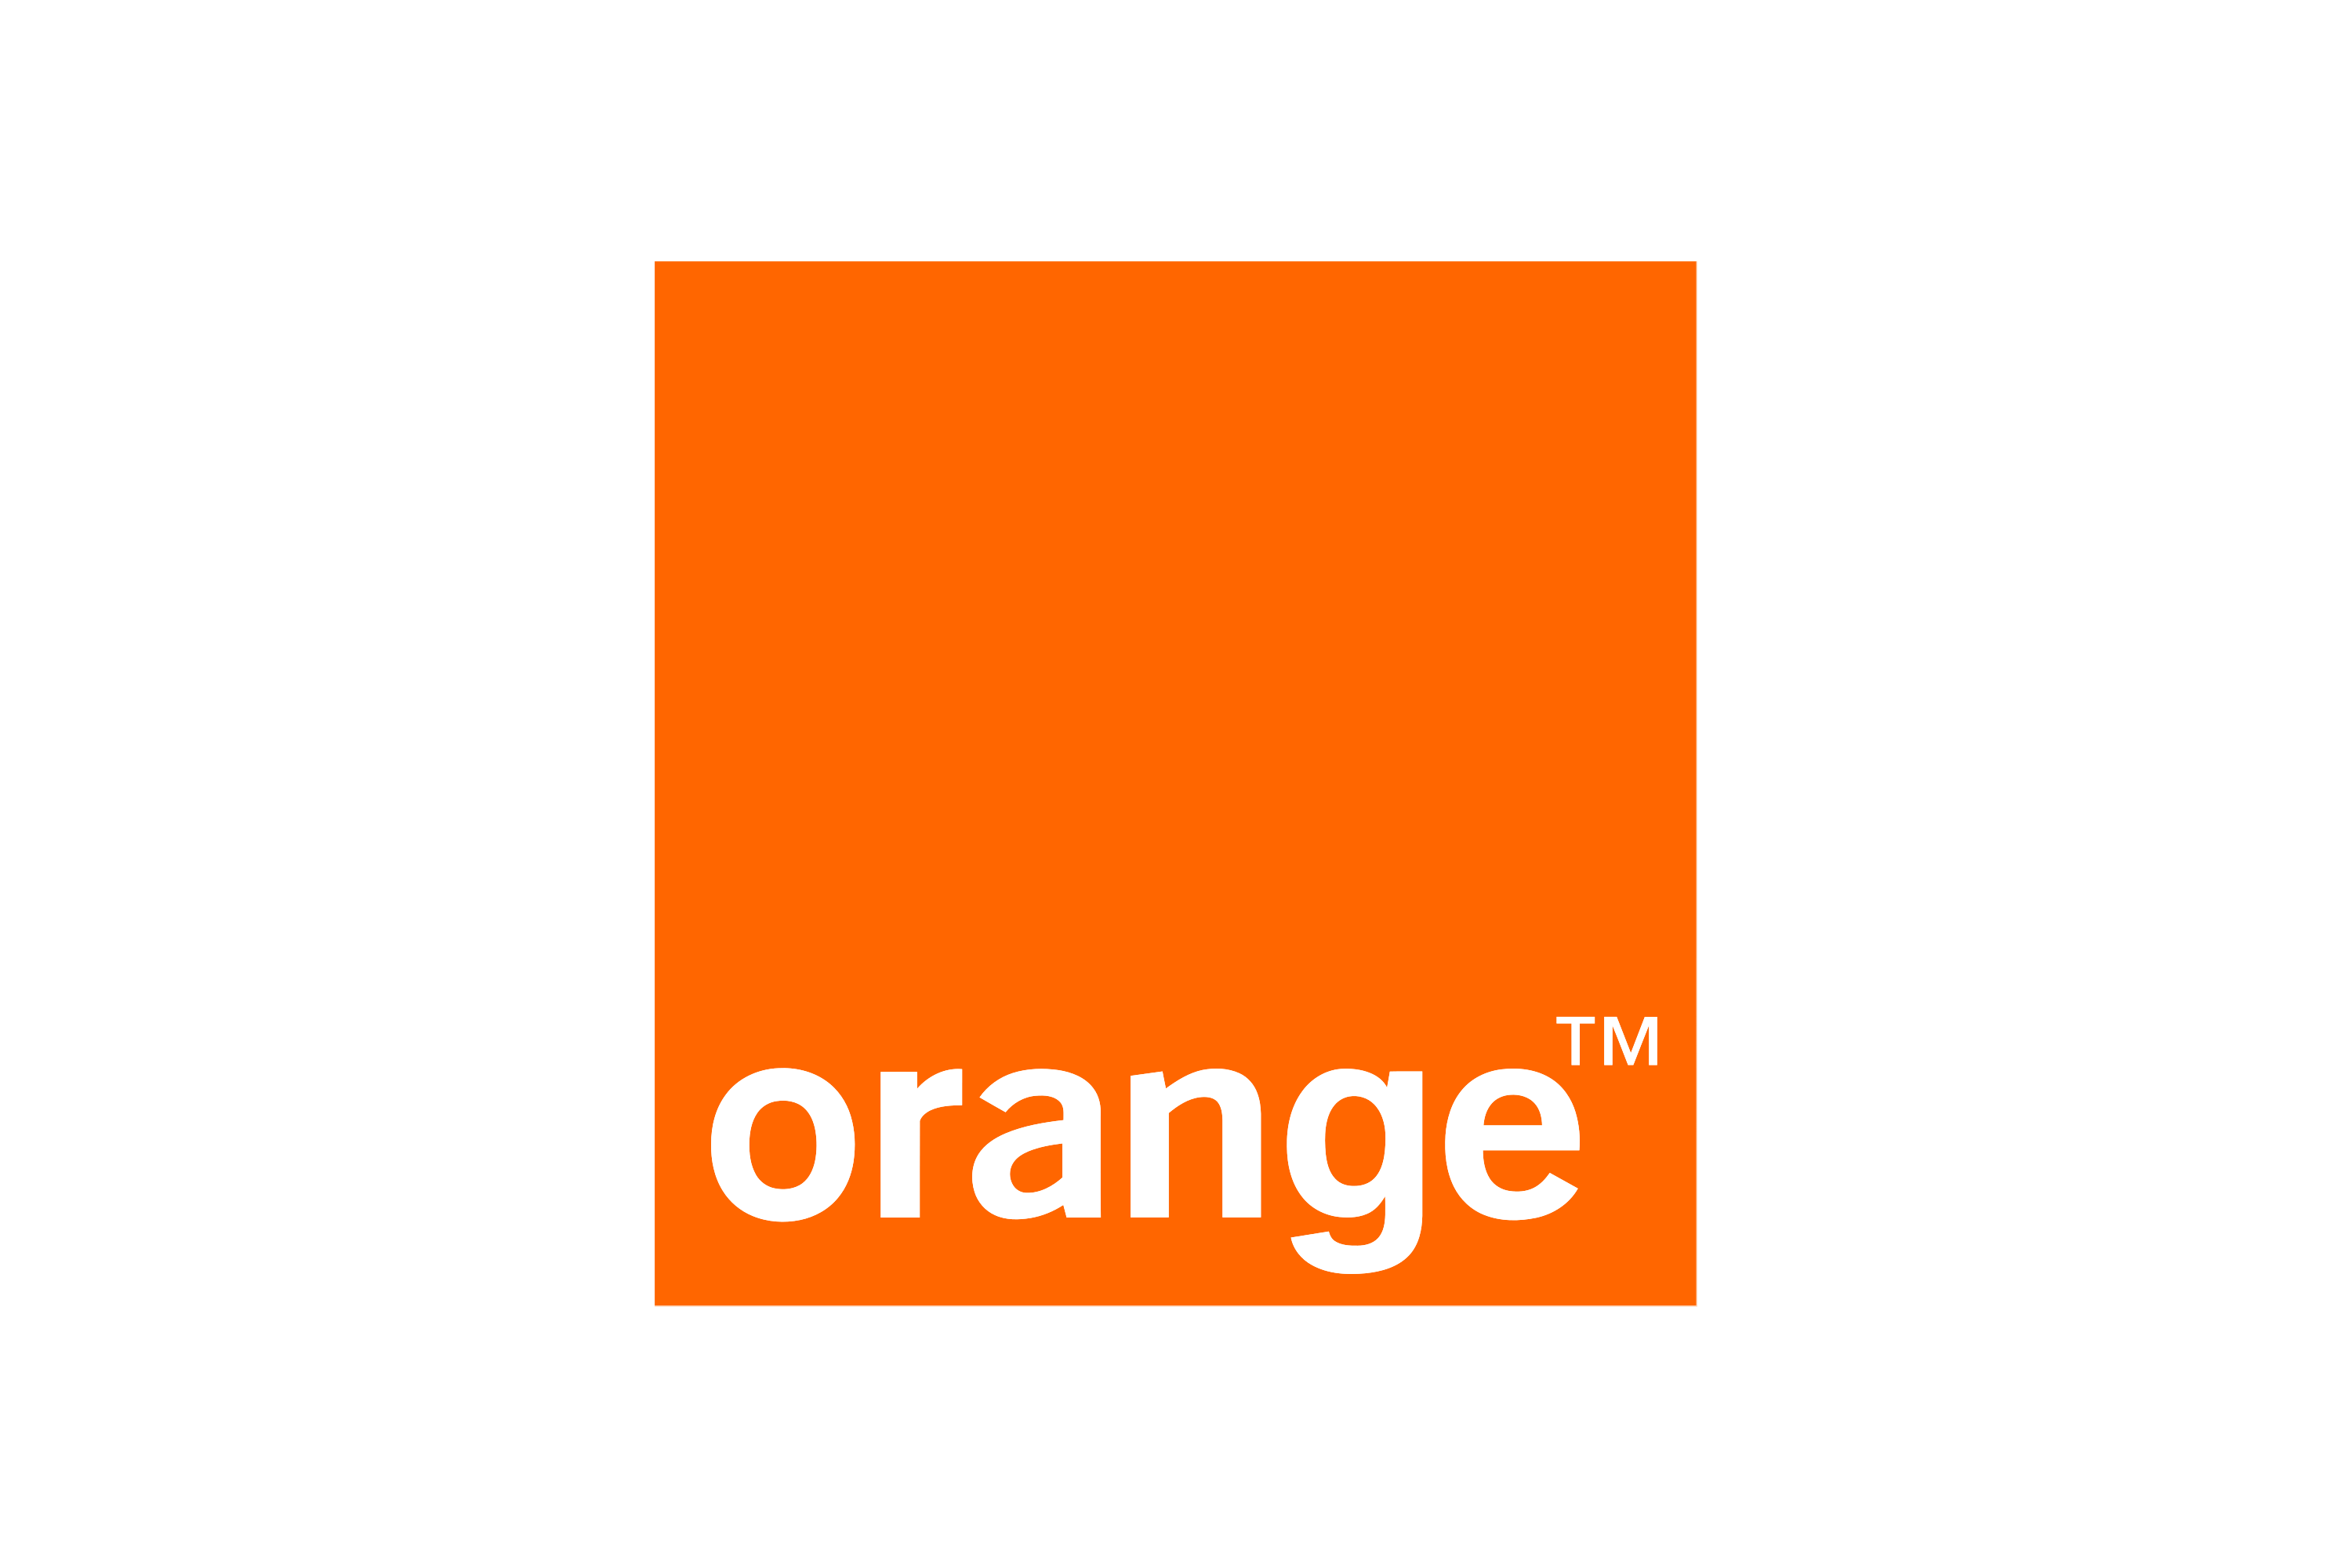 Download Orange Slovensko Logo in SVG Vector or PNG File Format ...